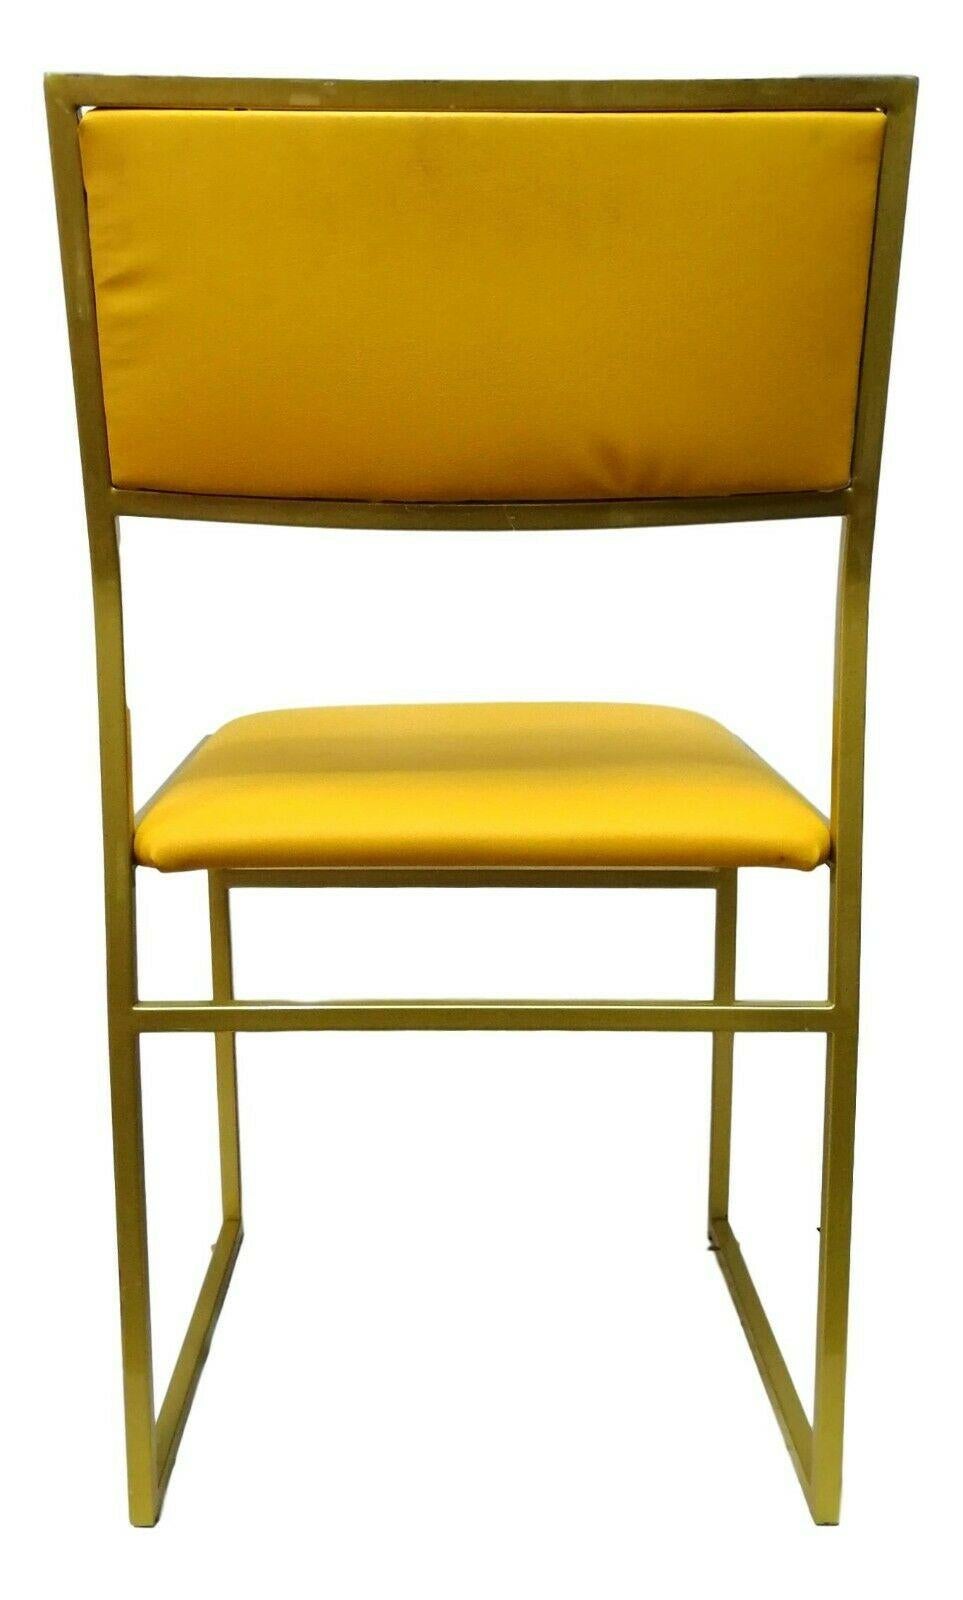 Origineller Design-Stuhl aus den 70er Jahren, mit goldfarben lackiertem Metallgestell, Sitz und Rückenlehne mit gelbem Skay oder Chintz gepolstert

Maße 78 cm in der Höhe, 42 cm in der Breite, 50 cm in der Tiefe und 45 cm in der Höhe des Sitzes